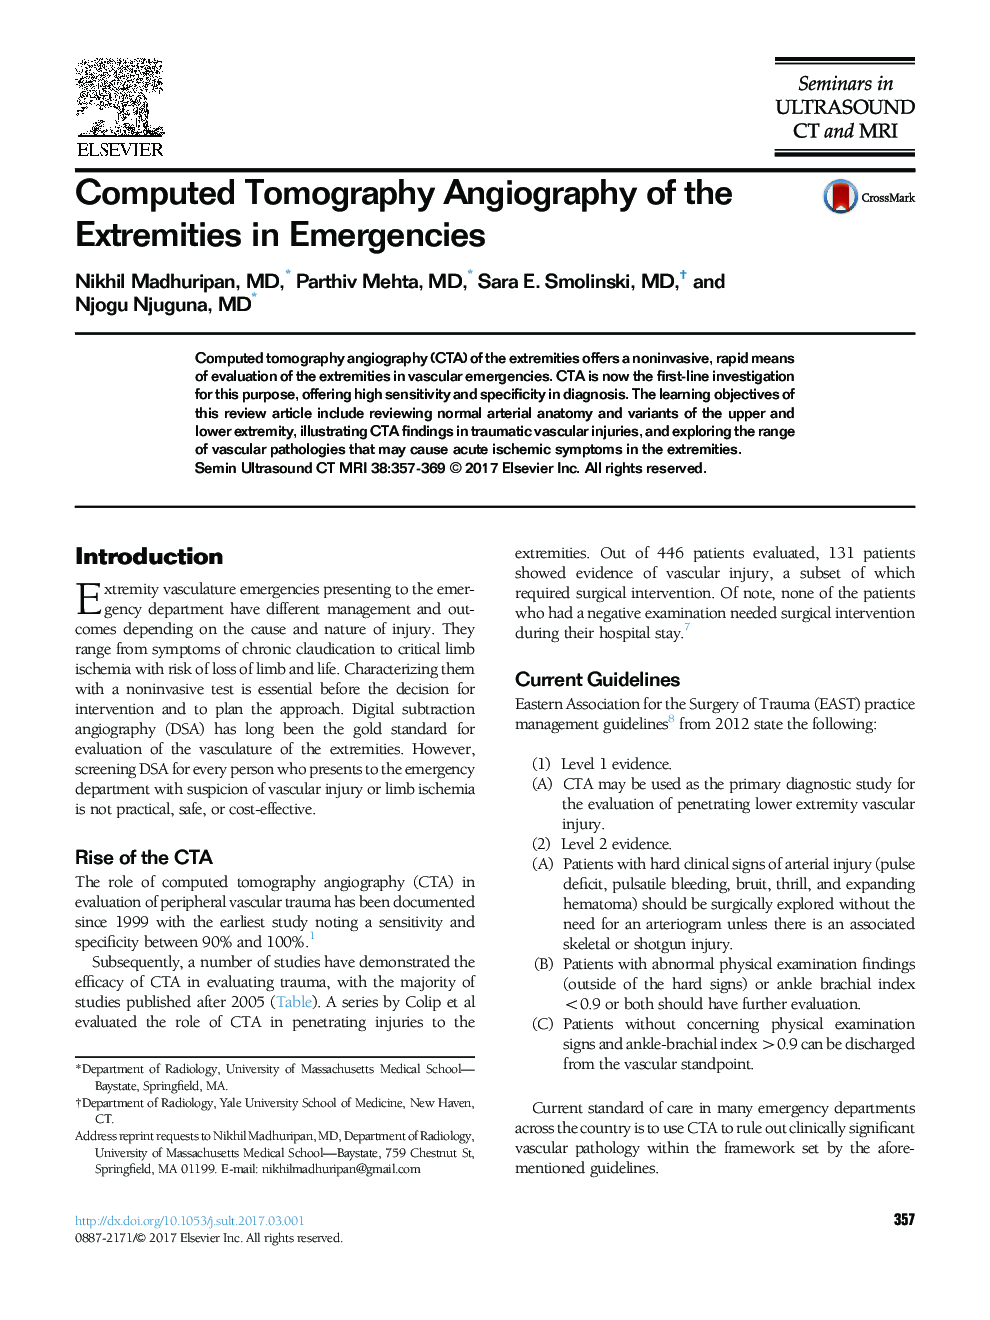 آنژیوگرافی توموگرافی کامپیوتری افراطی در اورژانس 